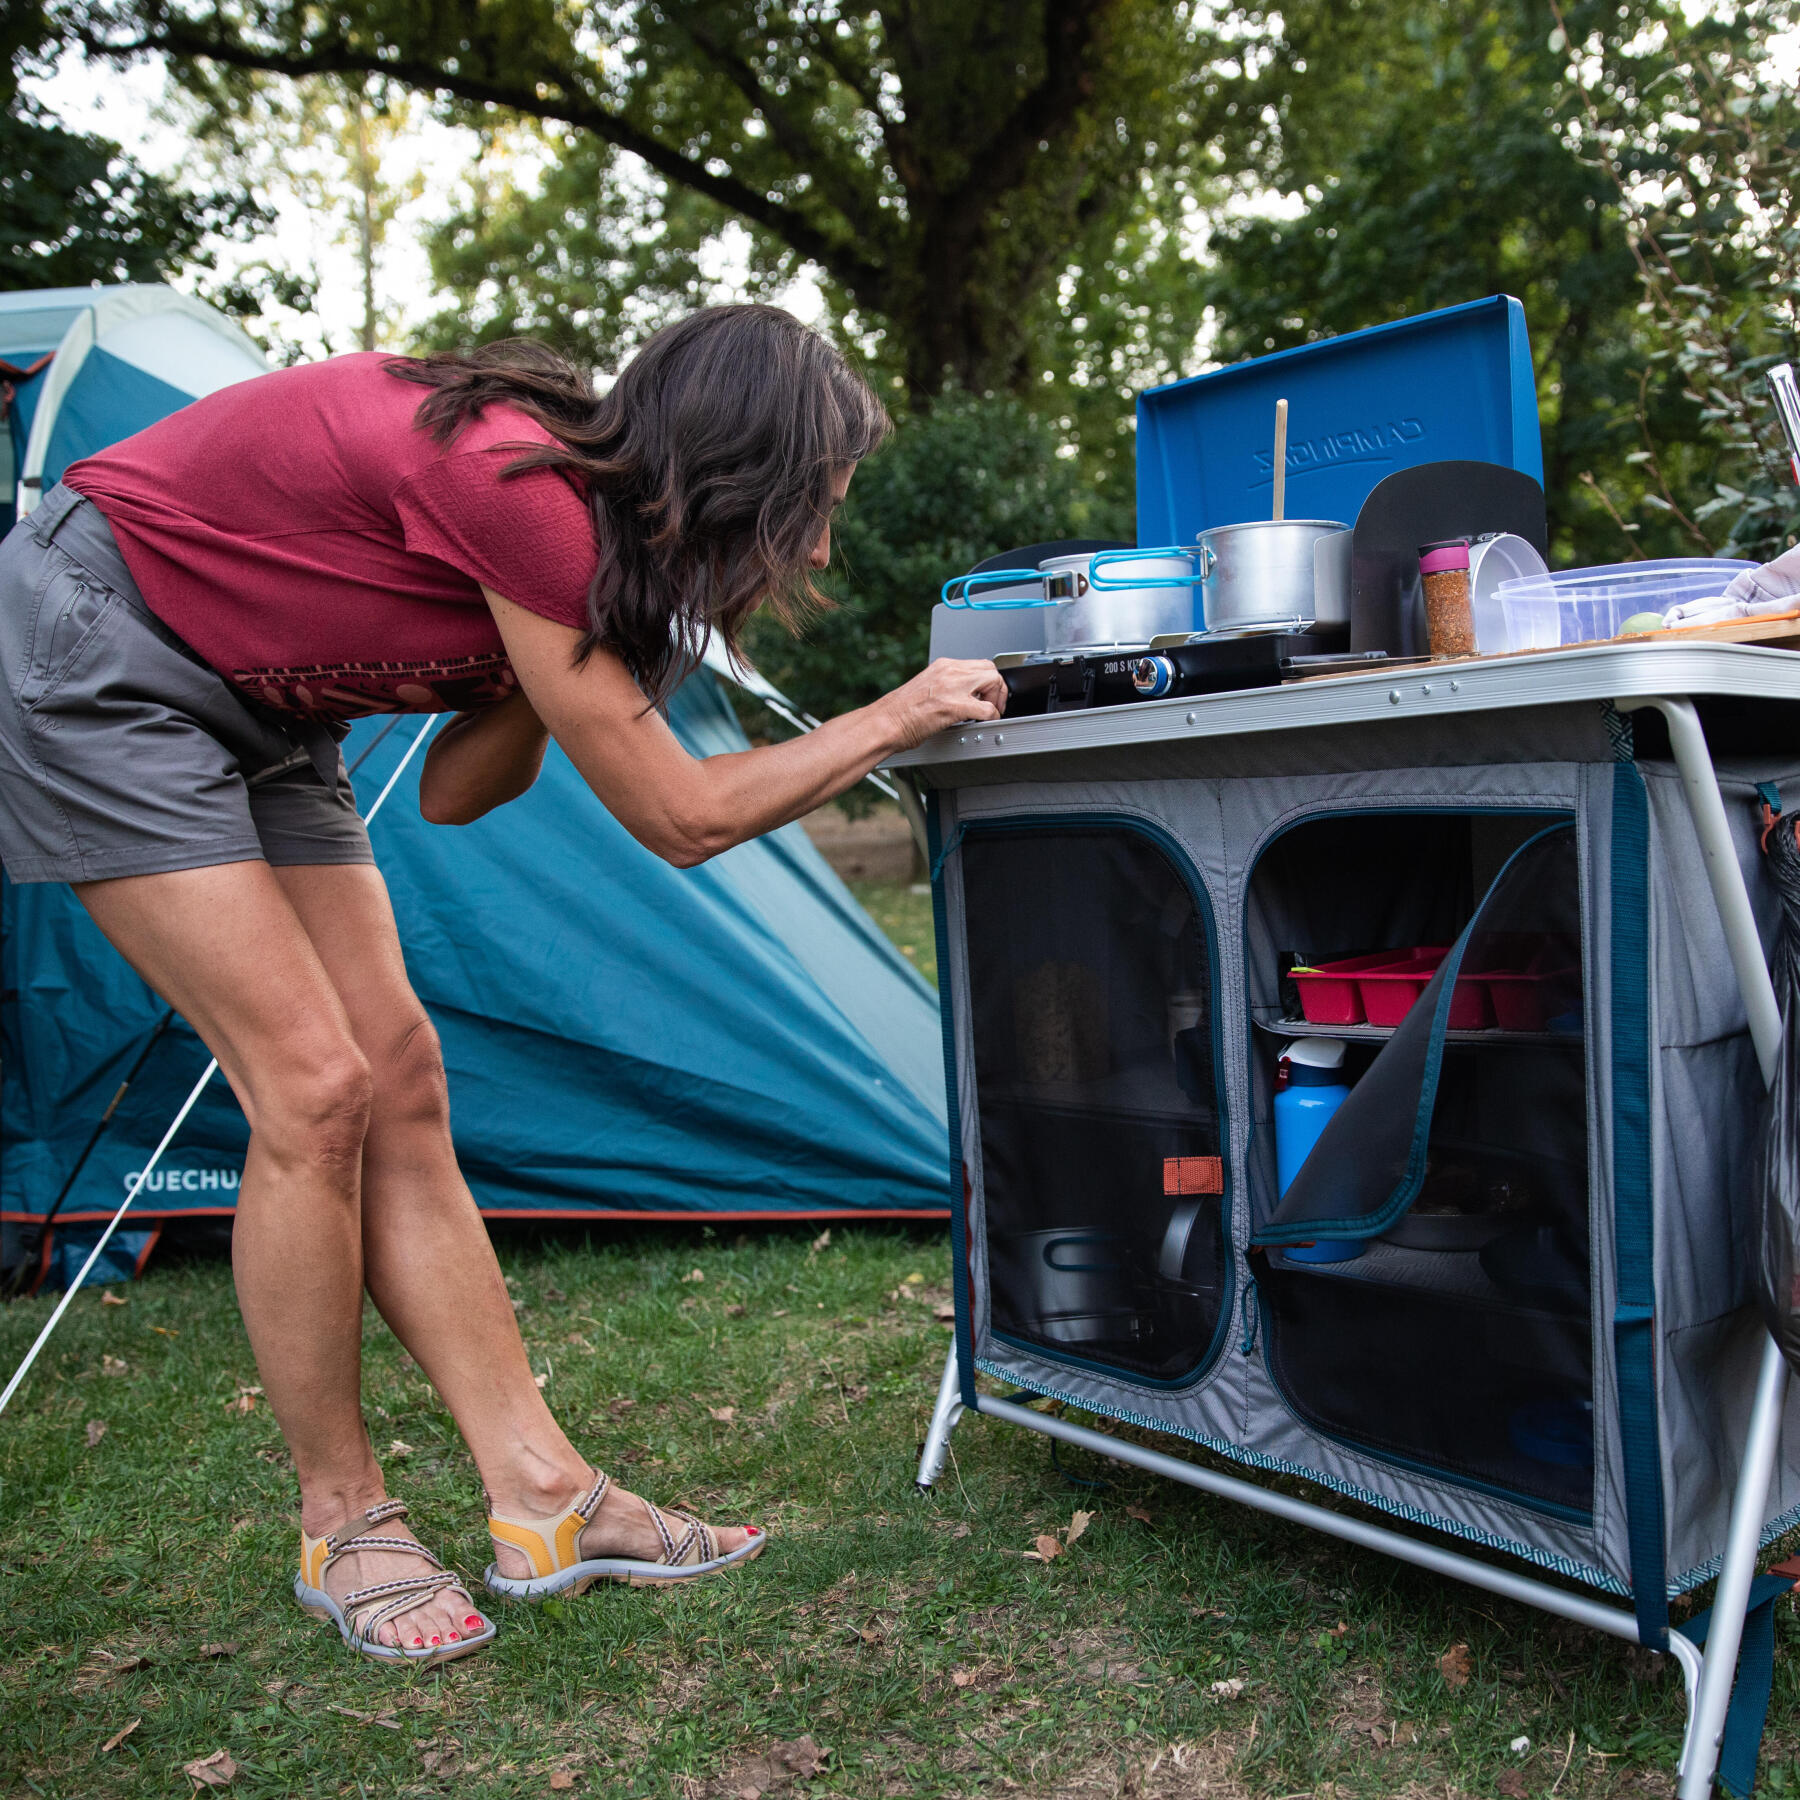 De ce ai nevoie pentru a găti în camping?